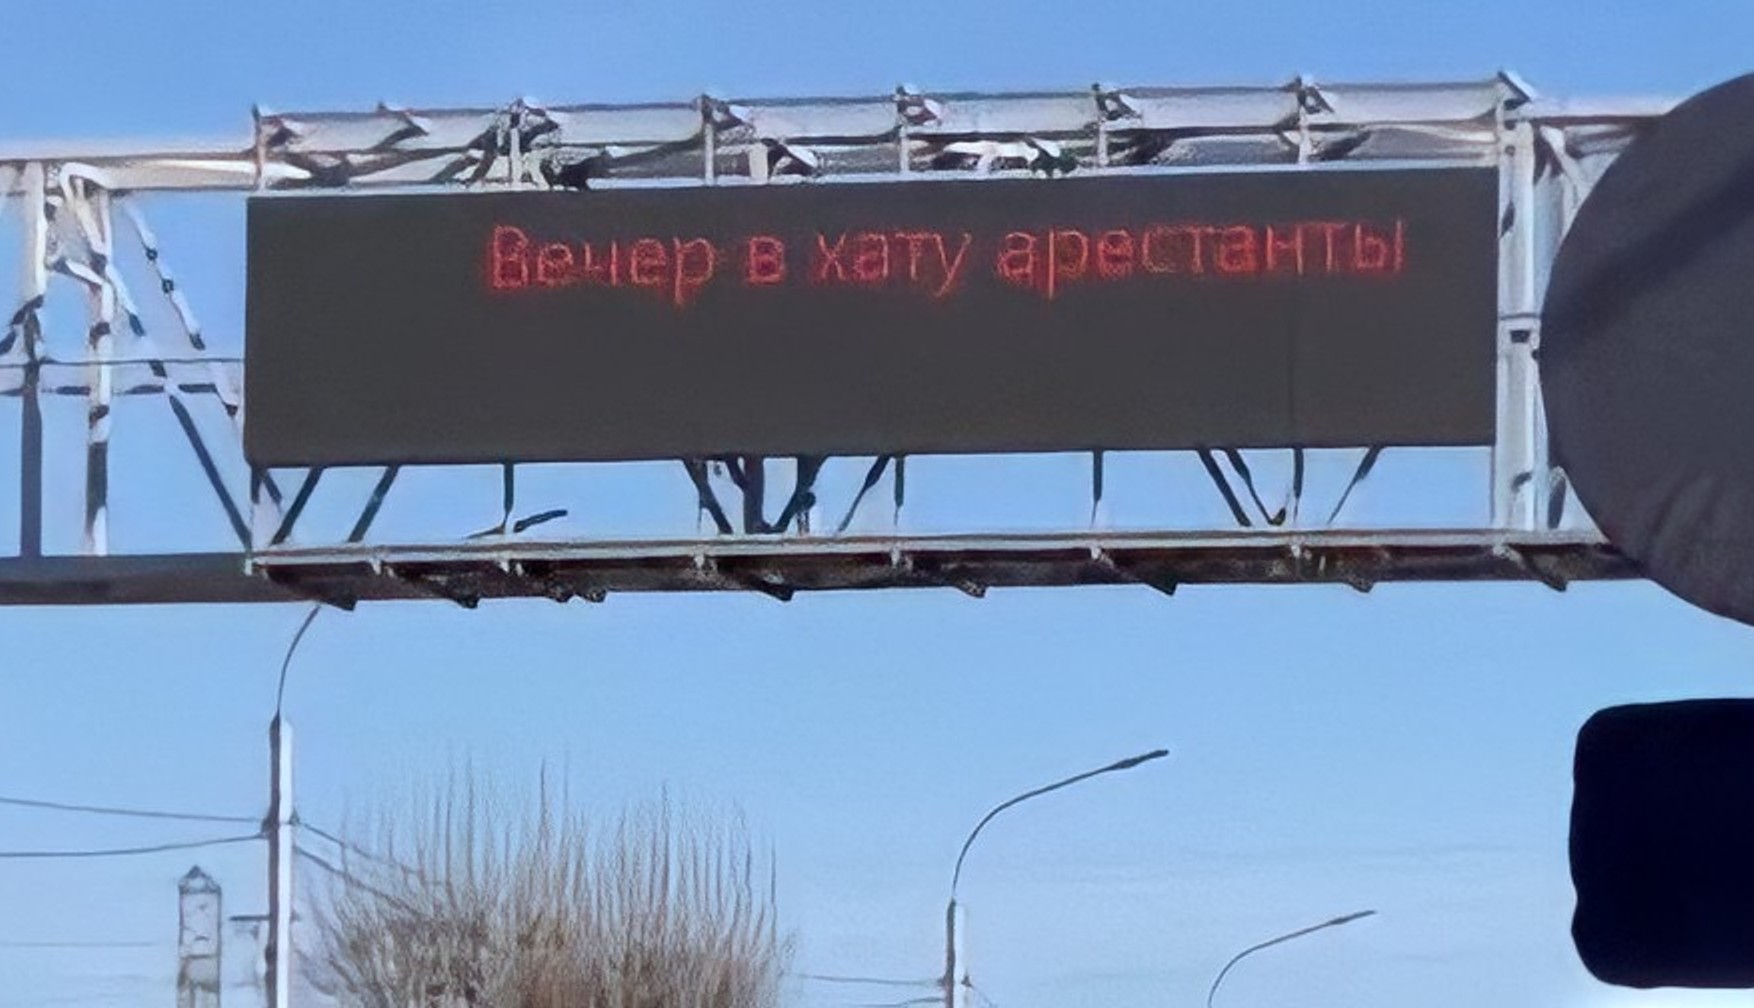 На табло при въезде в Красноярск появилась надпись «Вечер в хату арестанты»